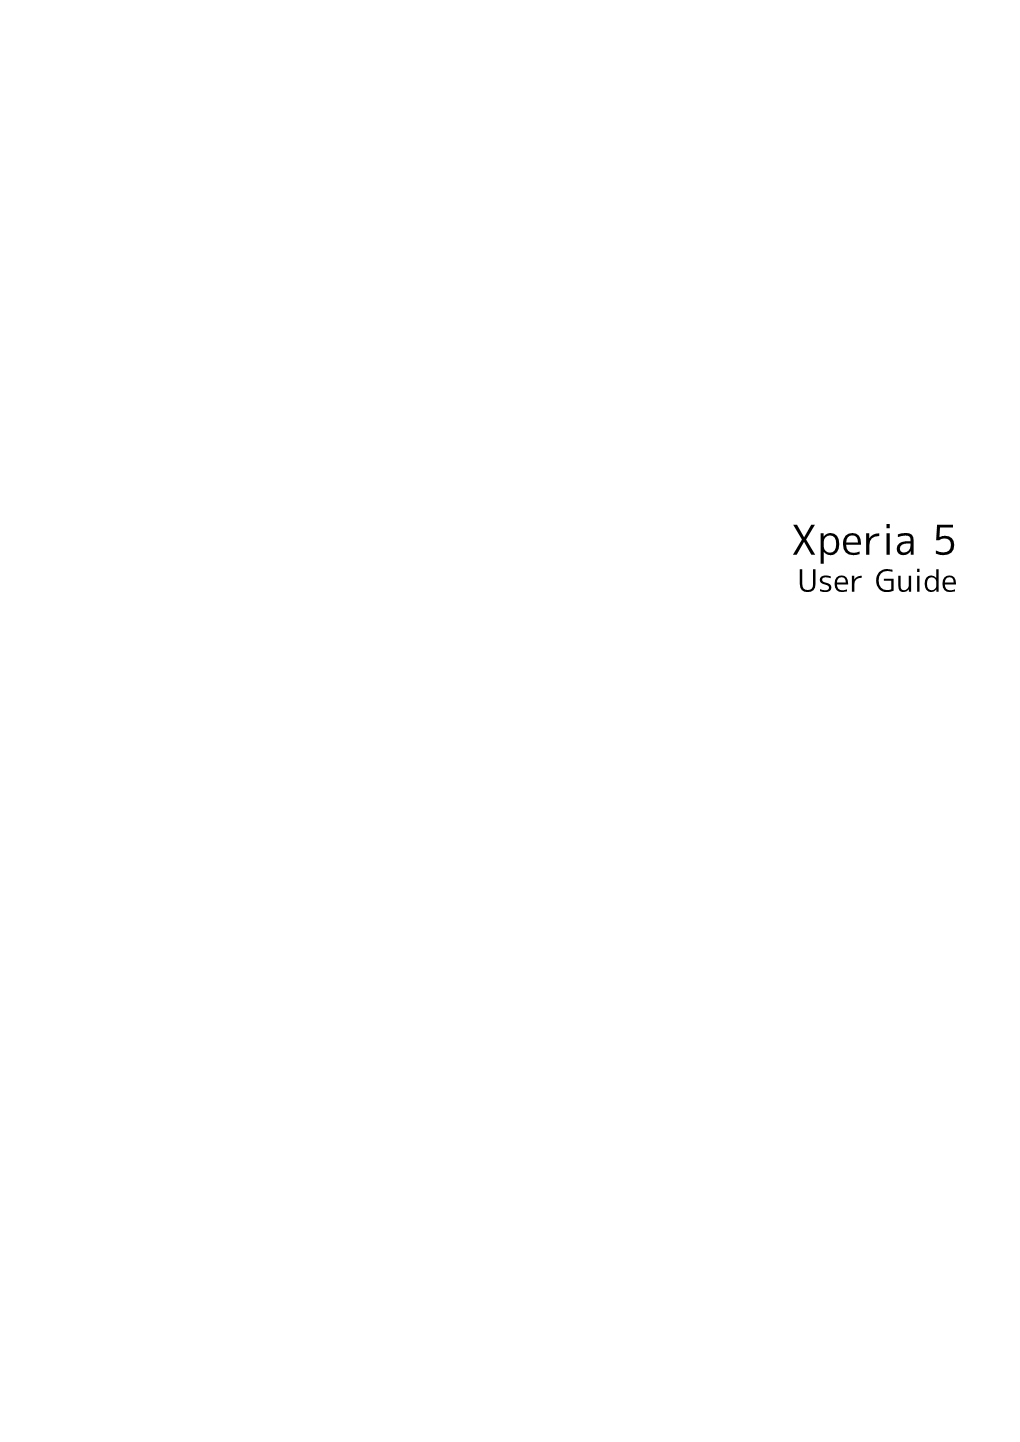 Xperia 5 User Guide